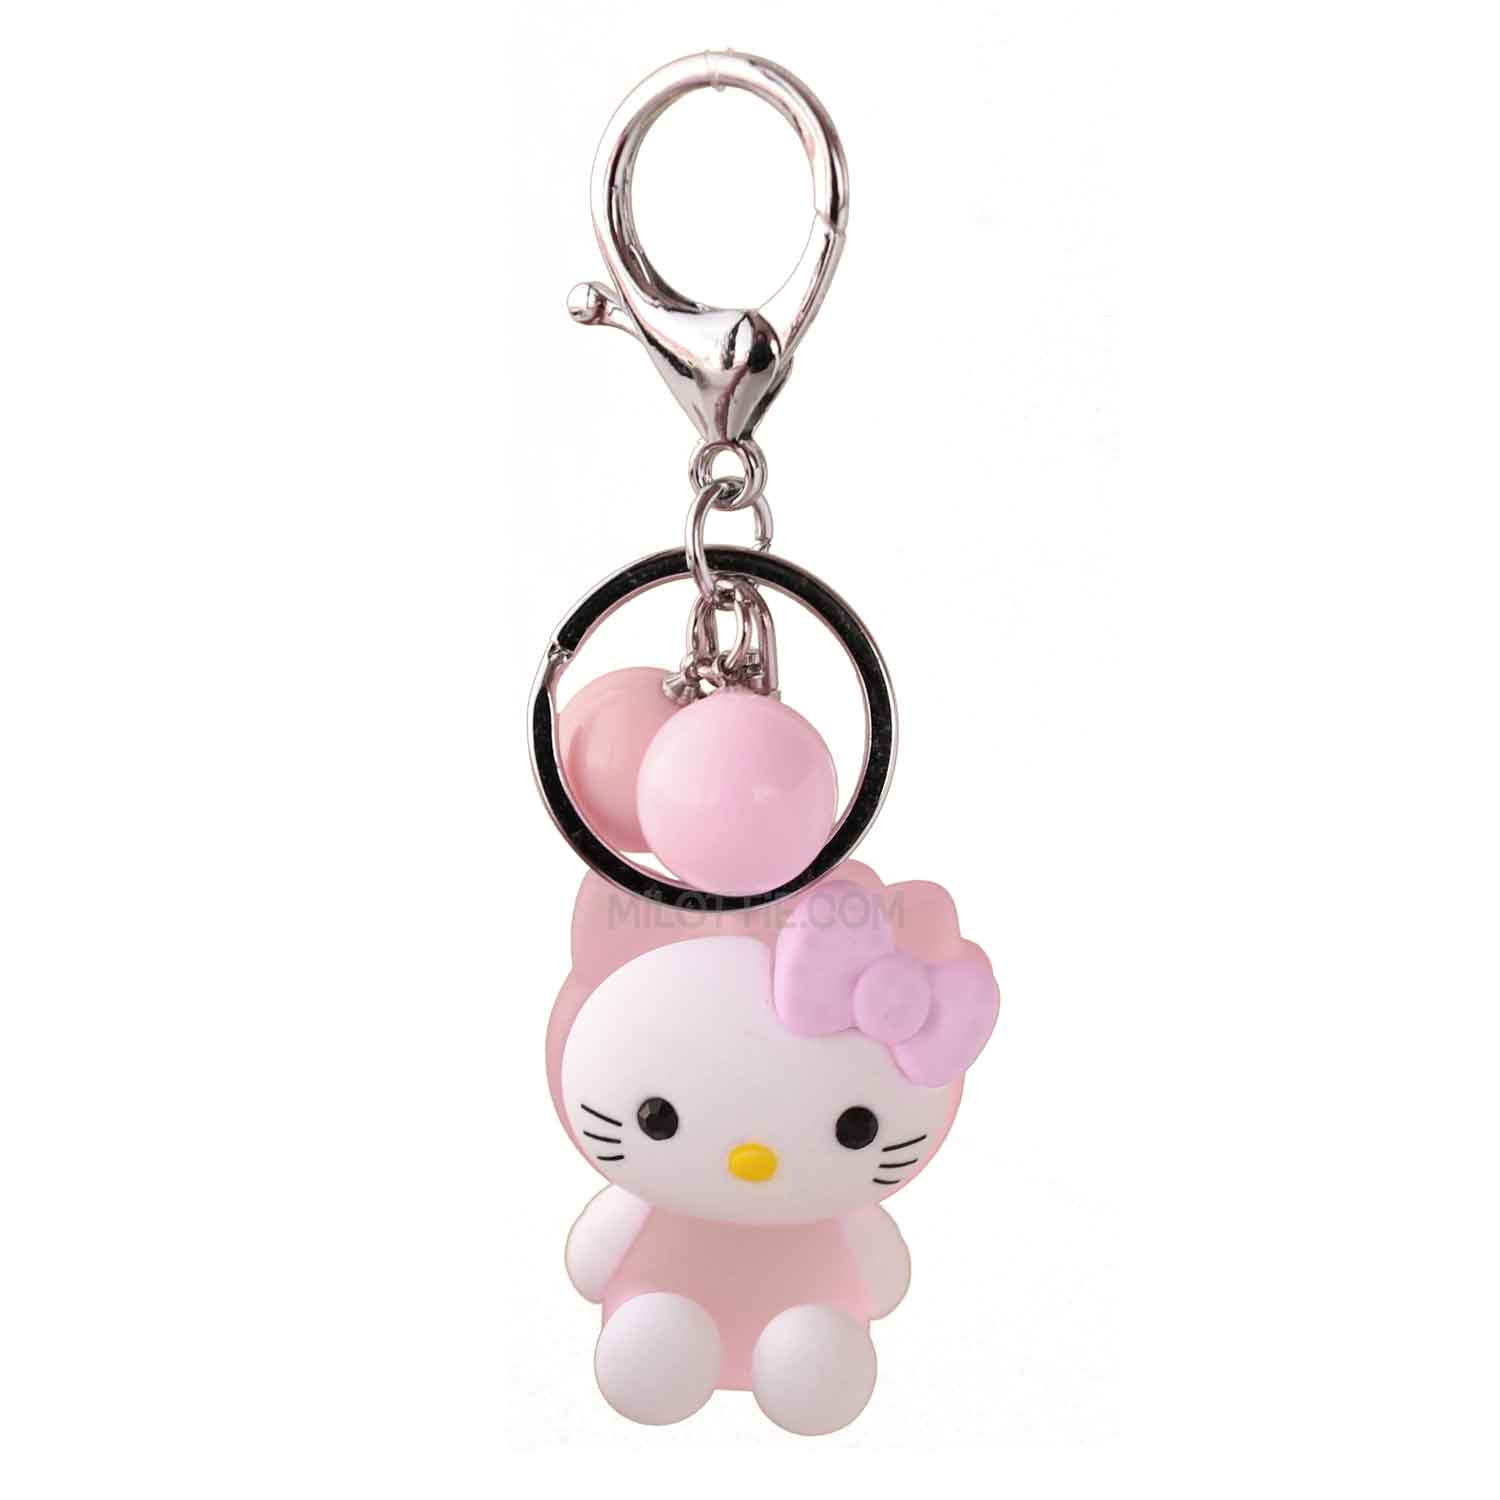 Pink hello kitty light up key chain - MiLottie